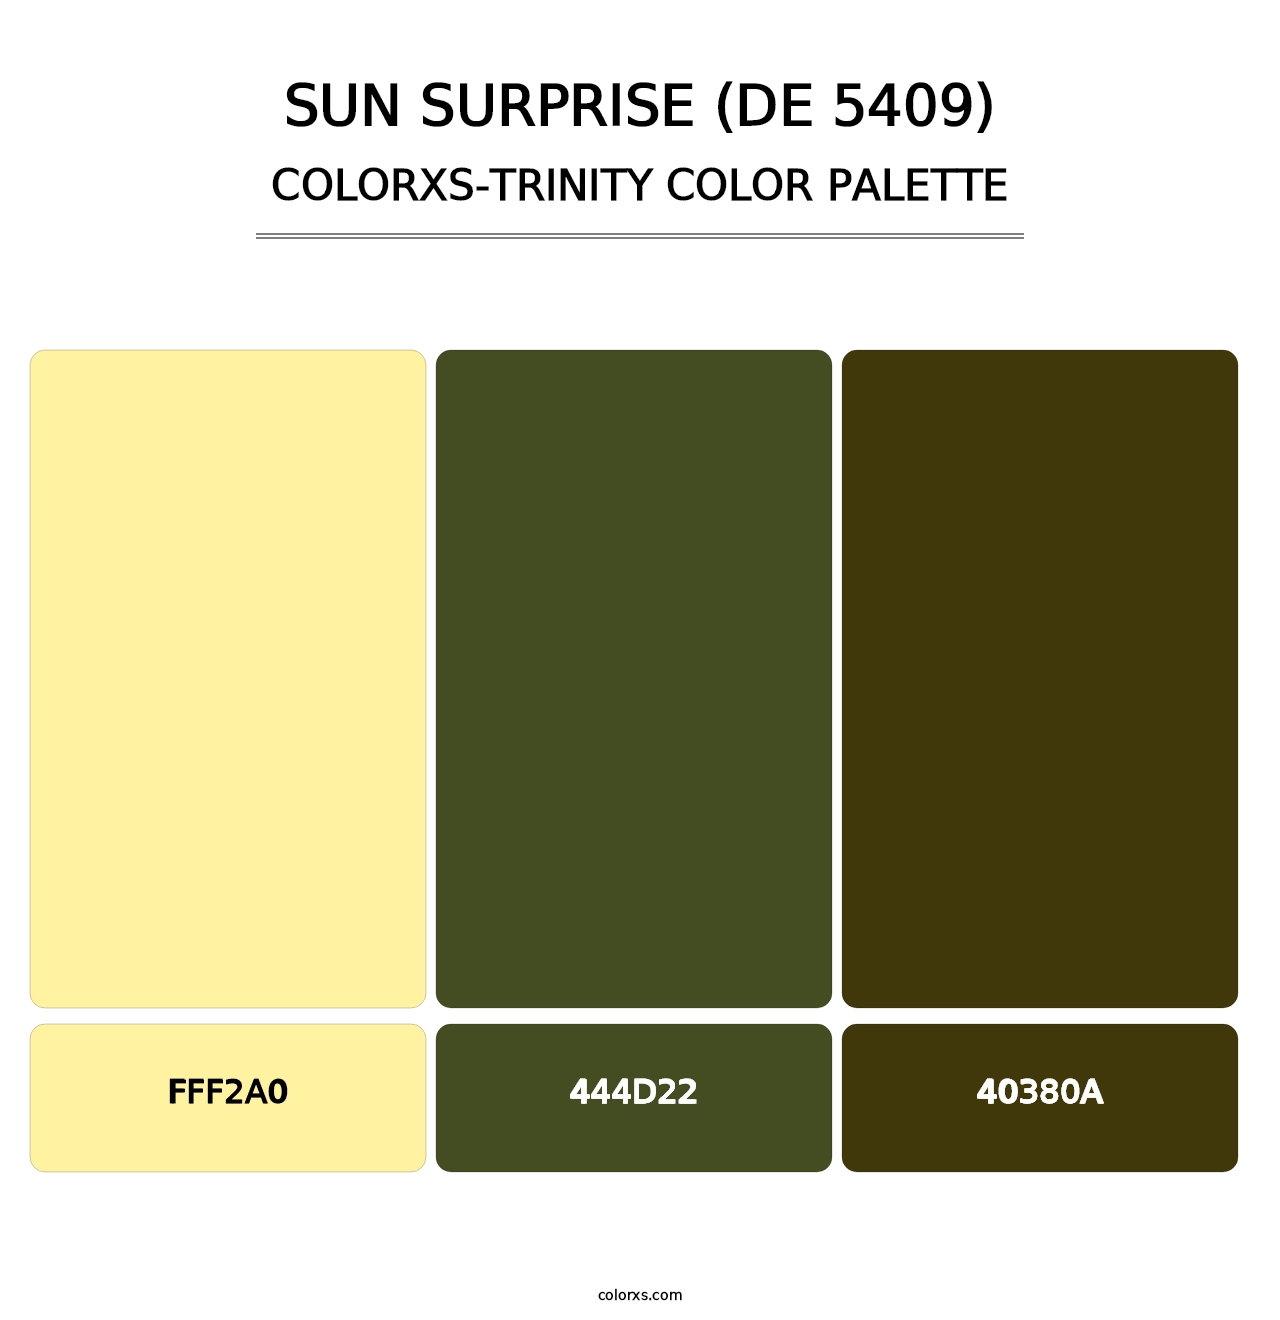 Sun Surprise (DE 5409) - Colorxs Trinity Palette